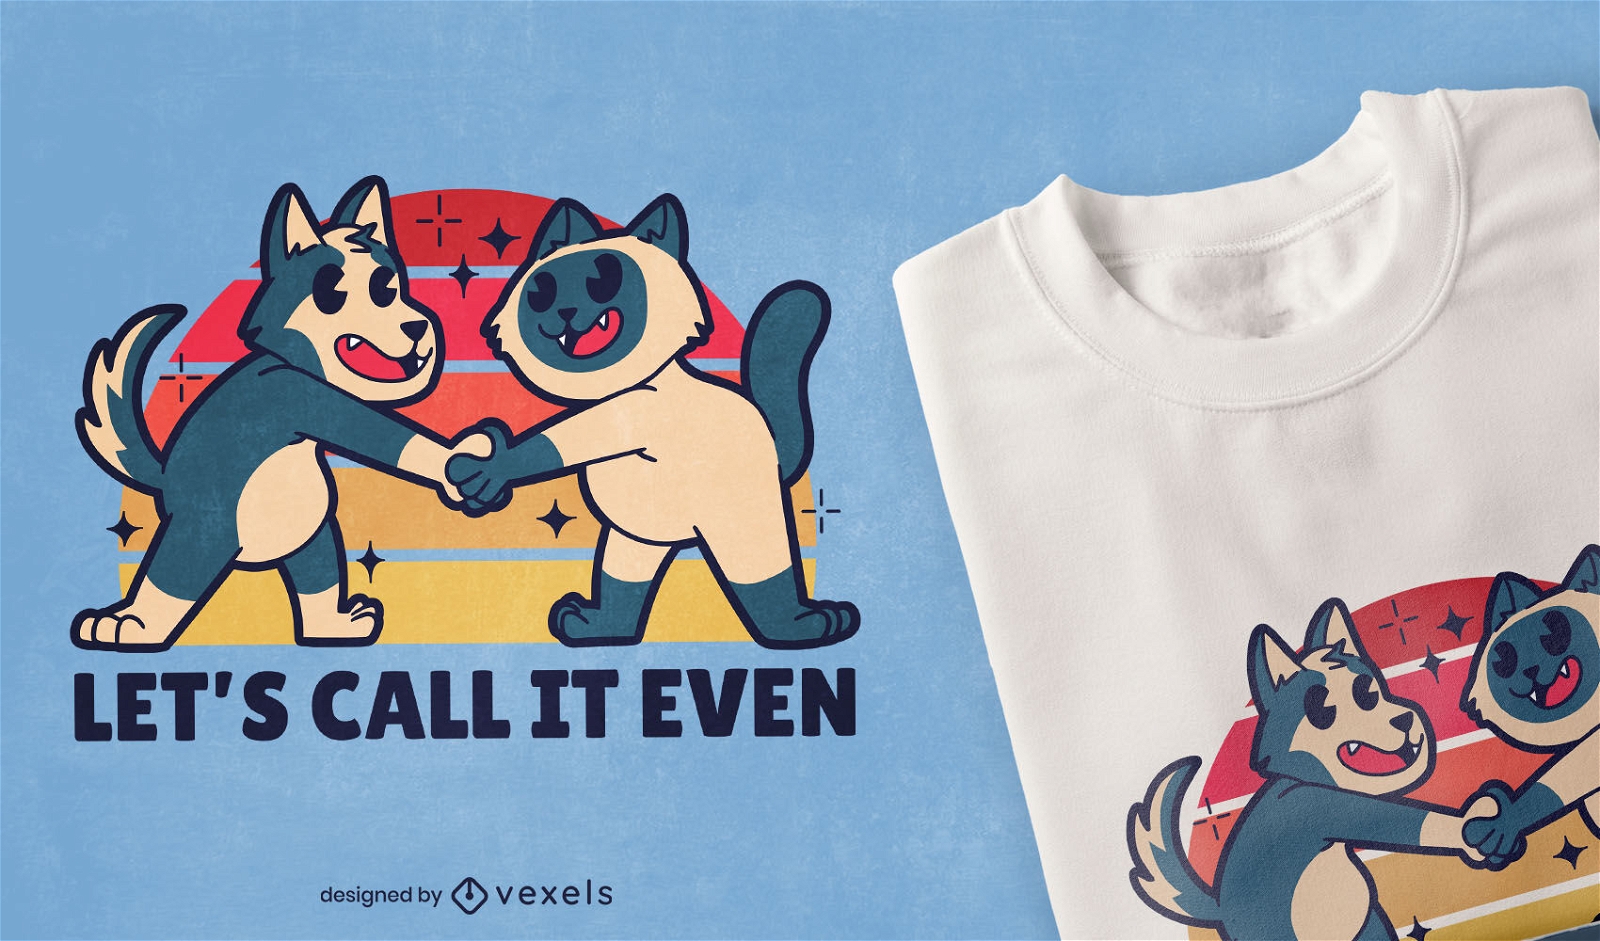 Cat and dog friends cartoon t-shirt design